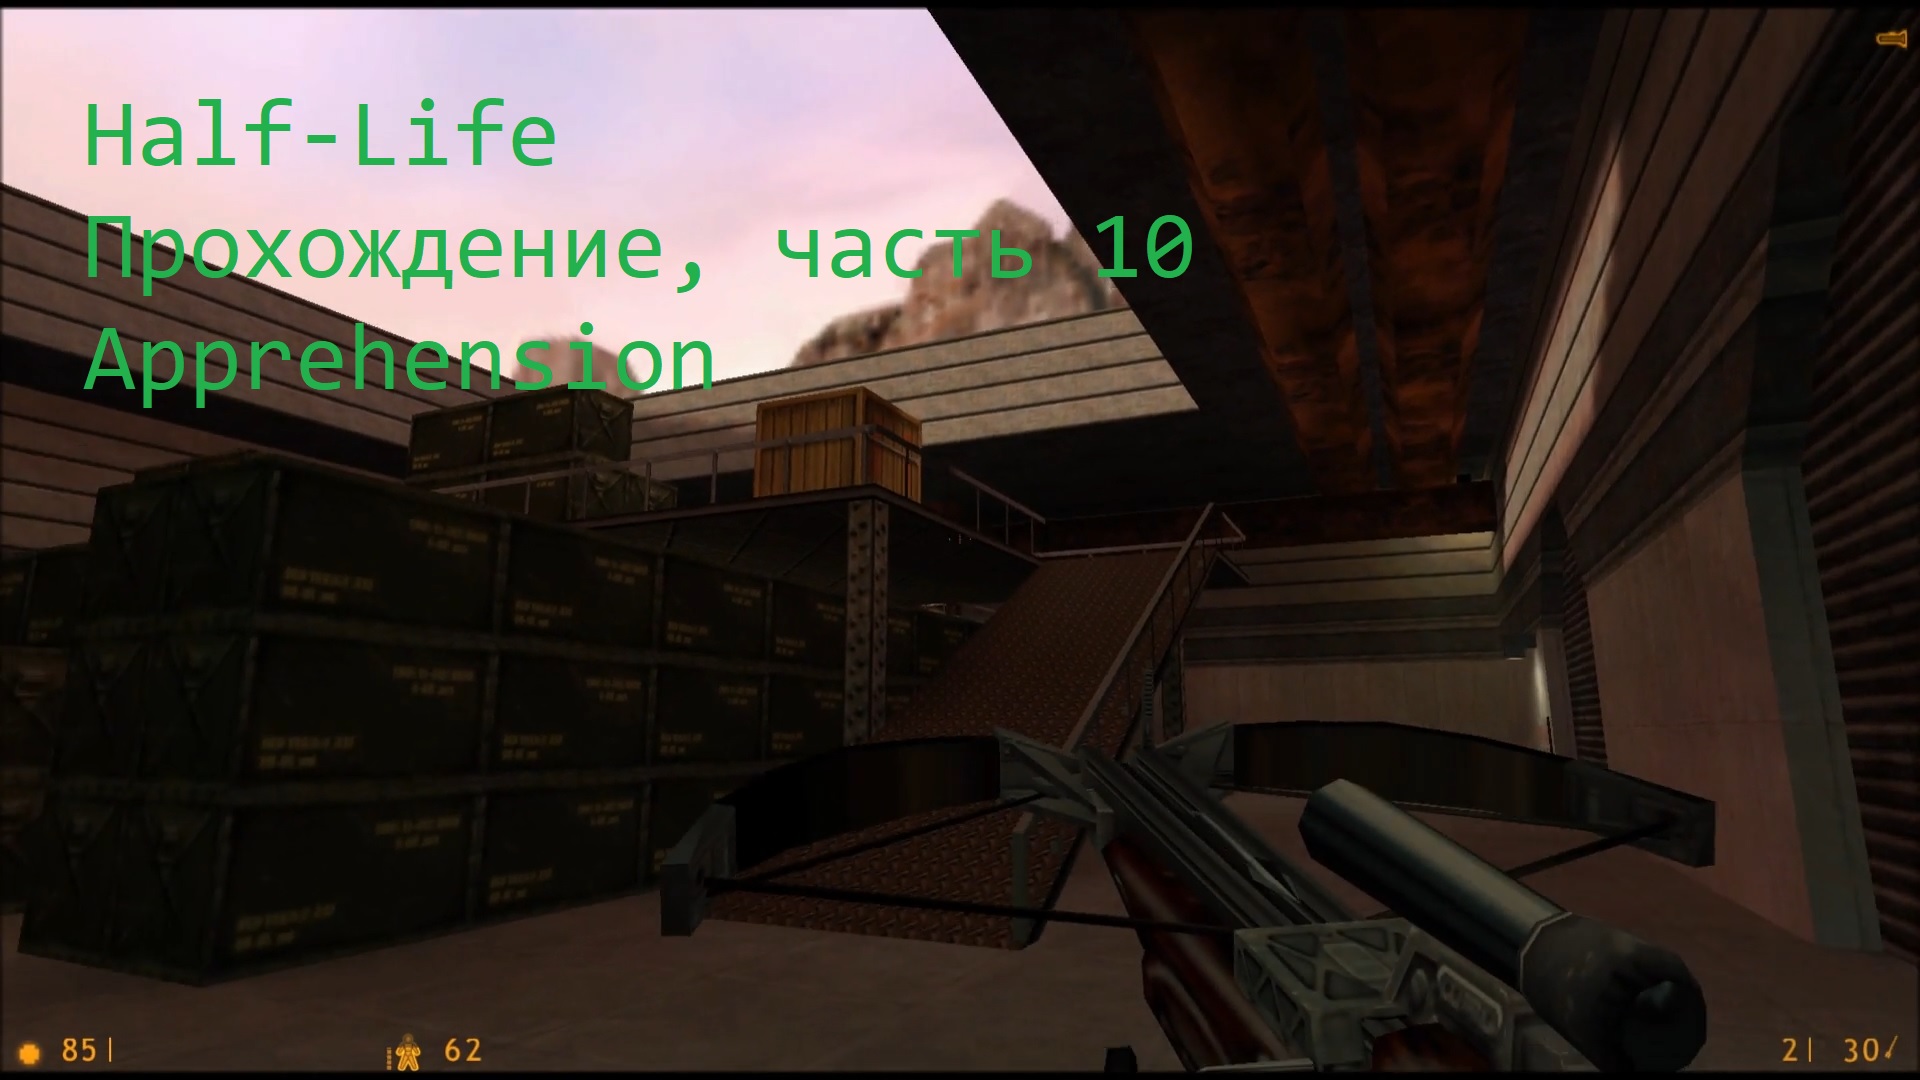 Half-Life, Прохождение, часть 10 - Apprehension